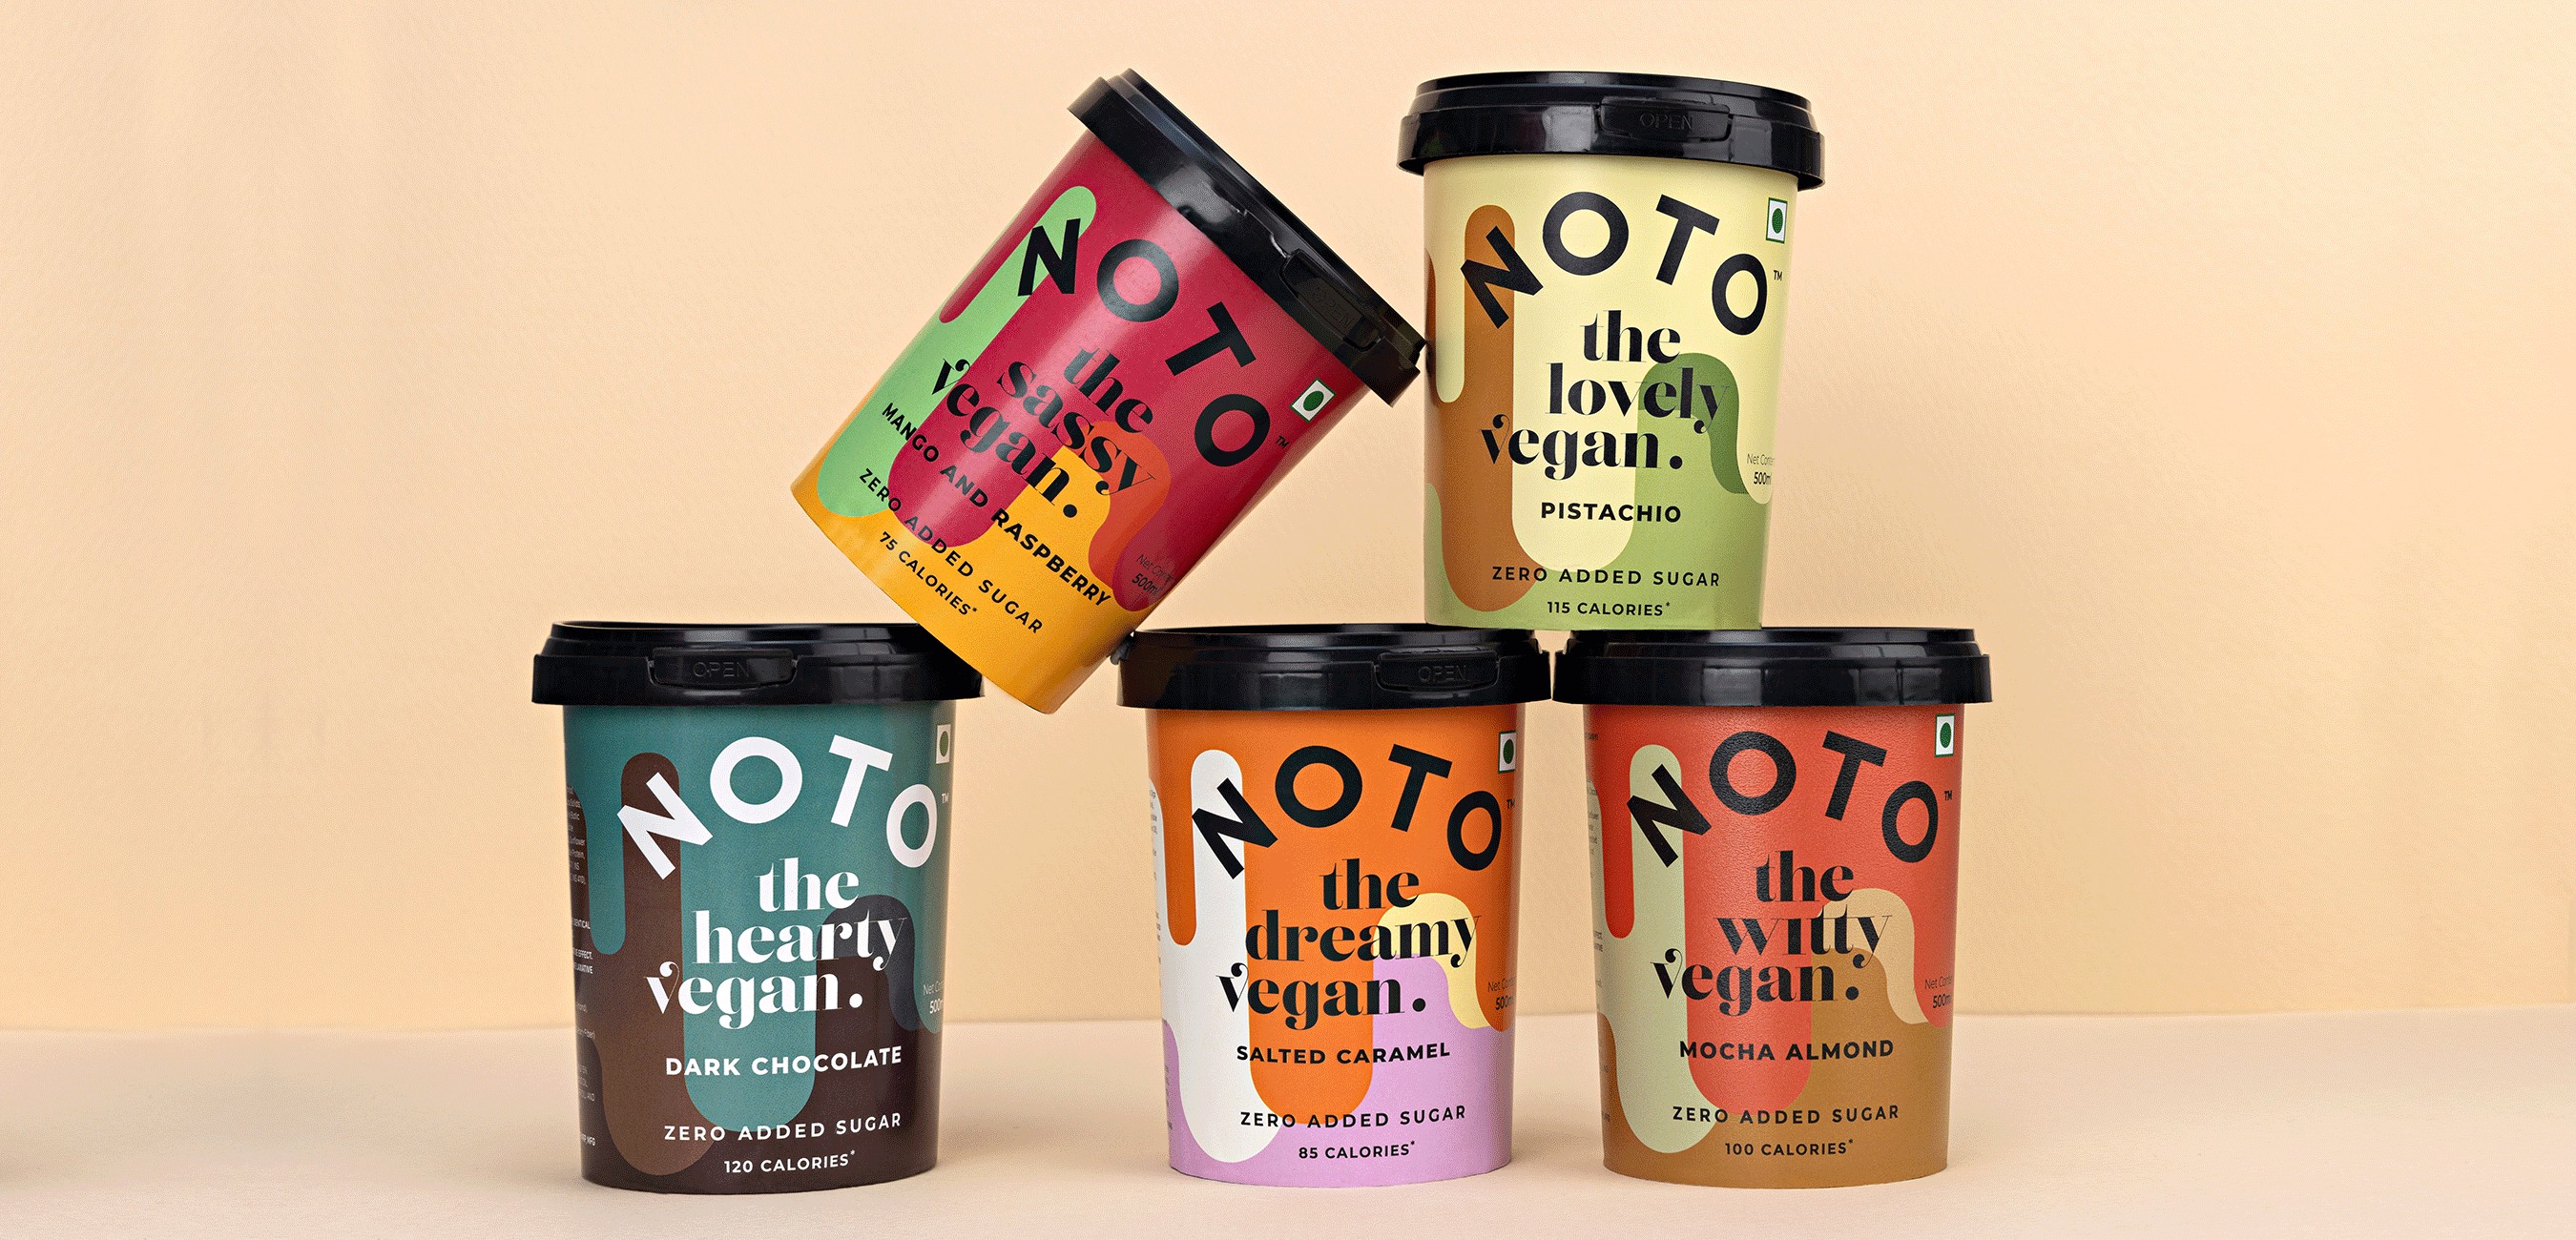 Noto Vegan ice Cream Packaging Design